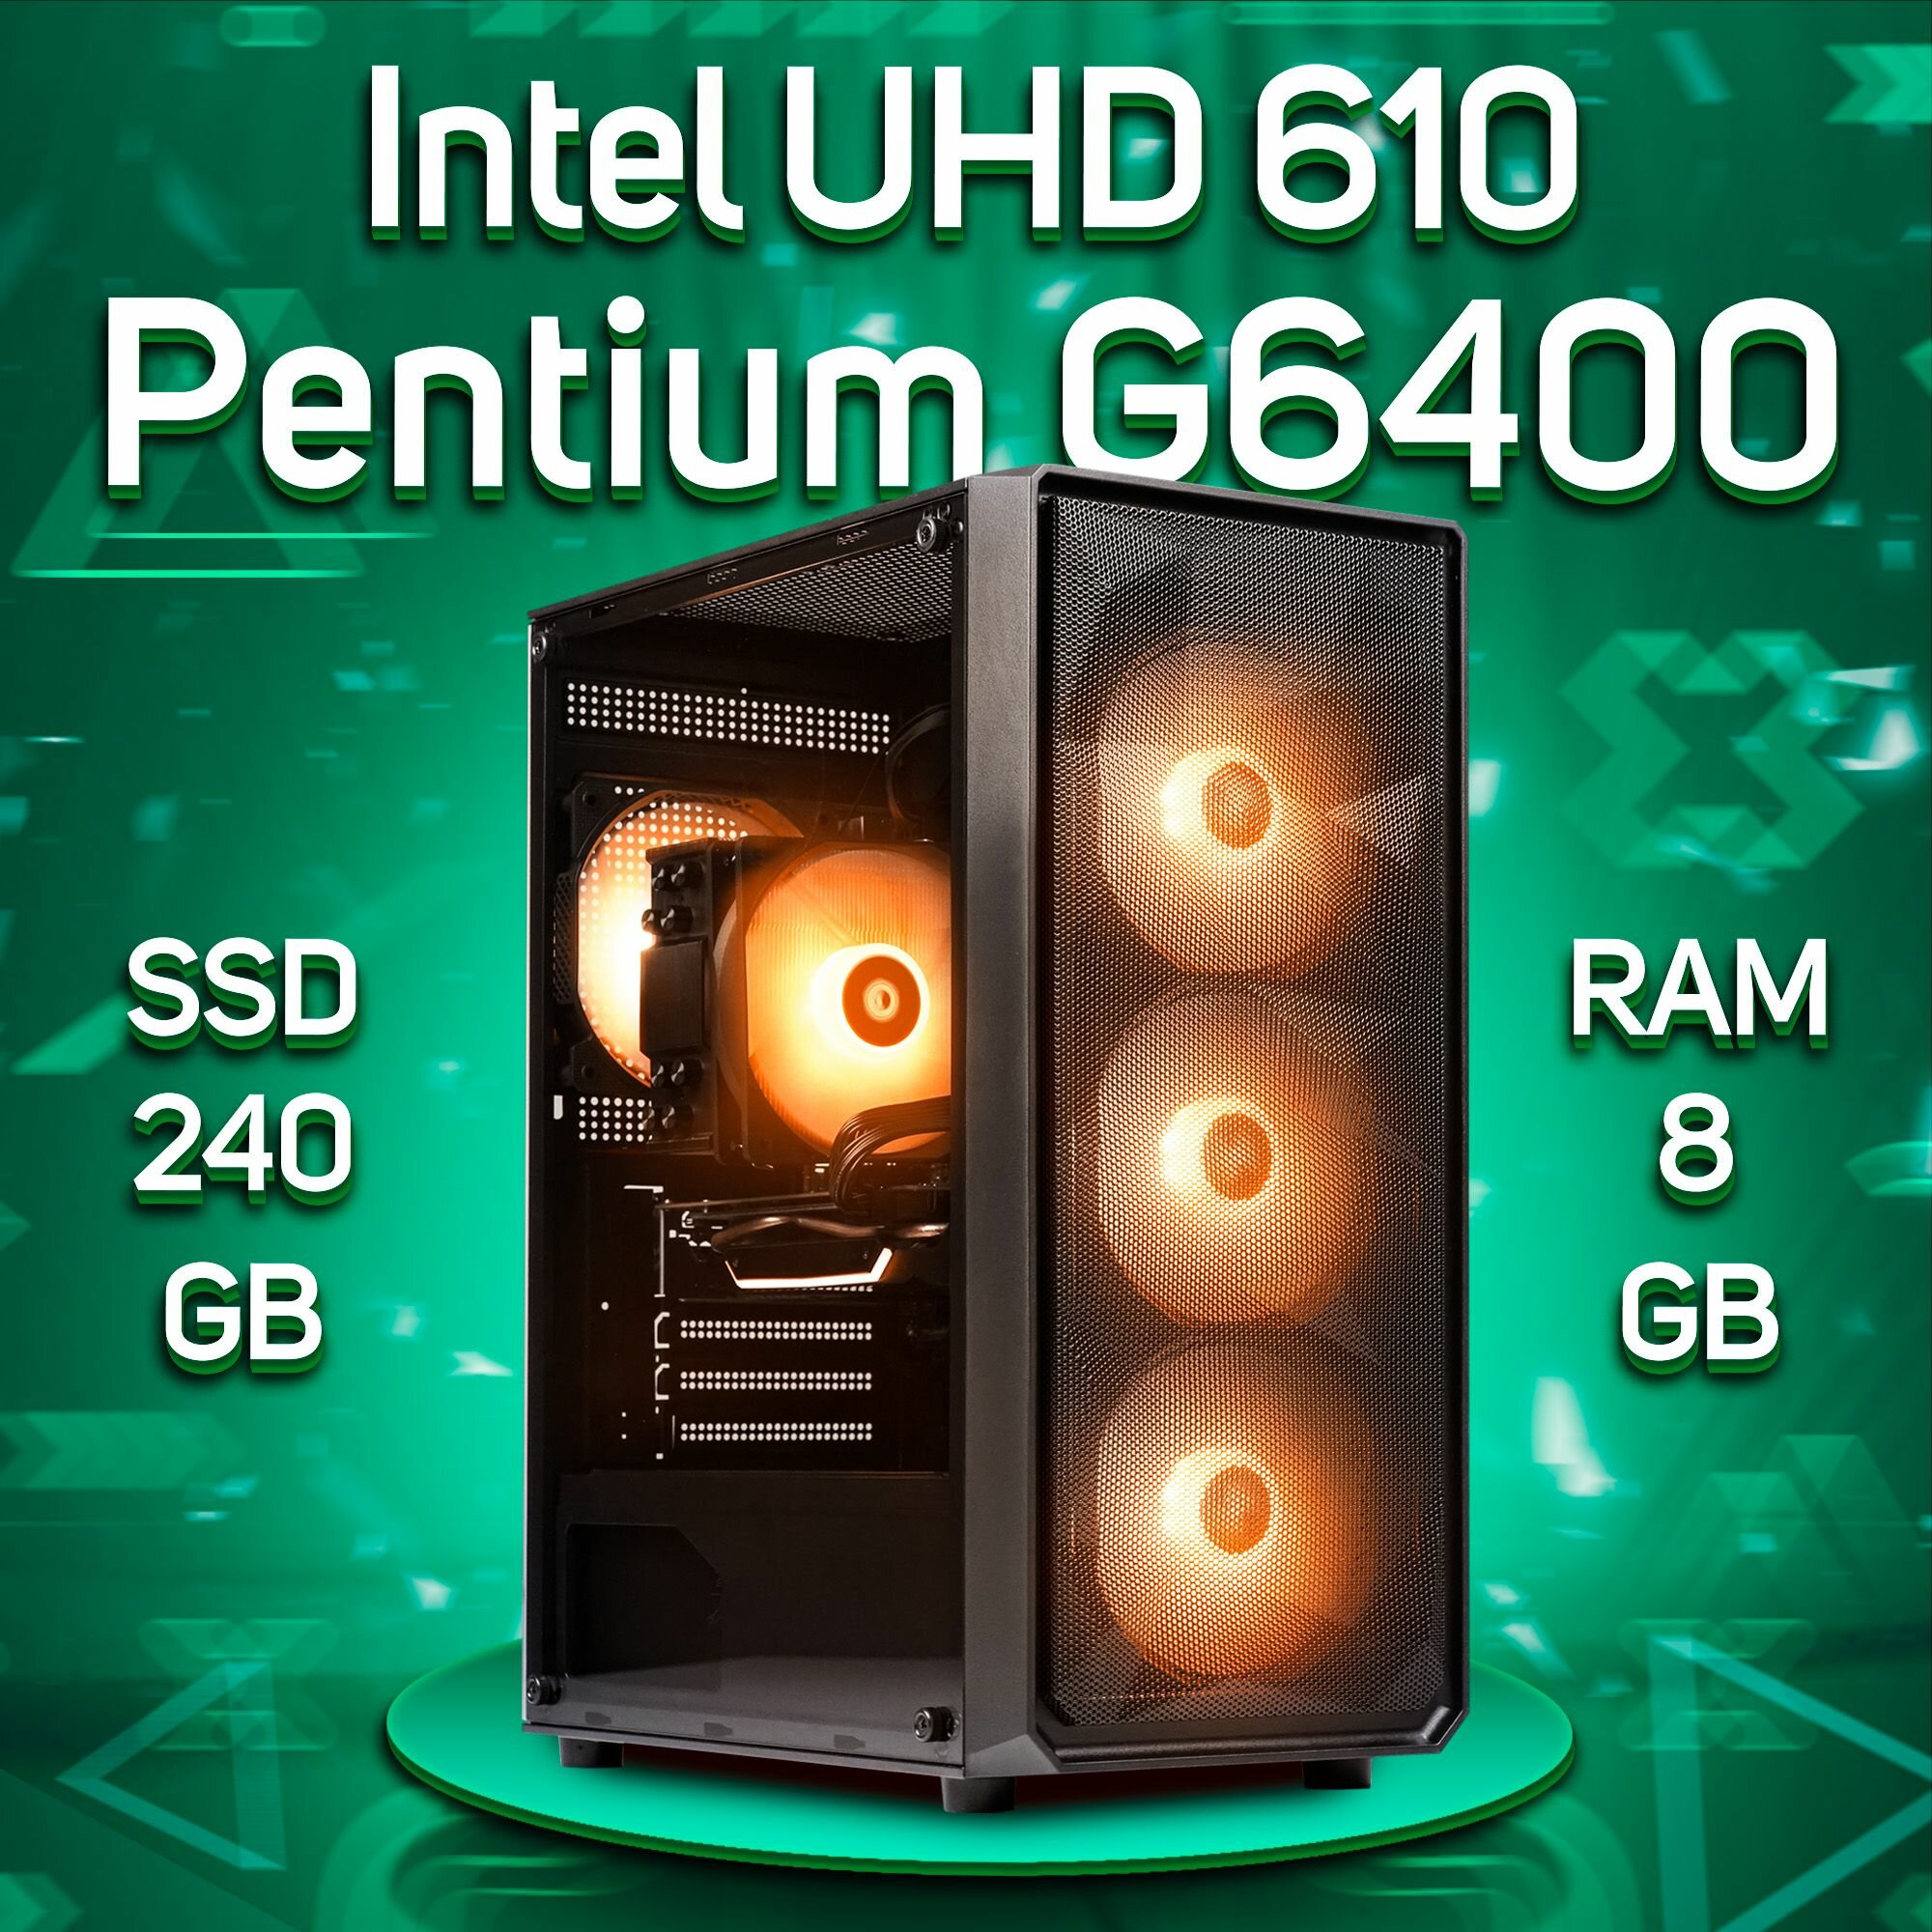 Компьютер Intel Pentium G6400 / Intel UHD Graphics 610, RAM 8GB, SSD 240GB